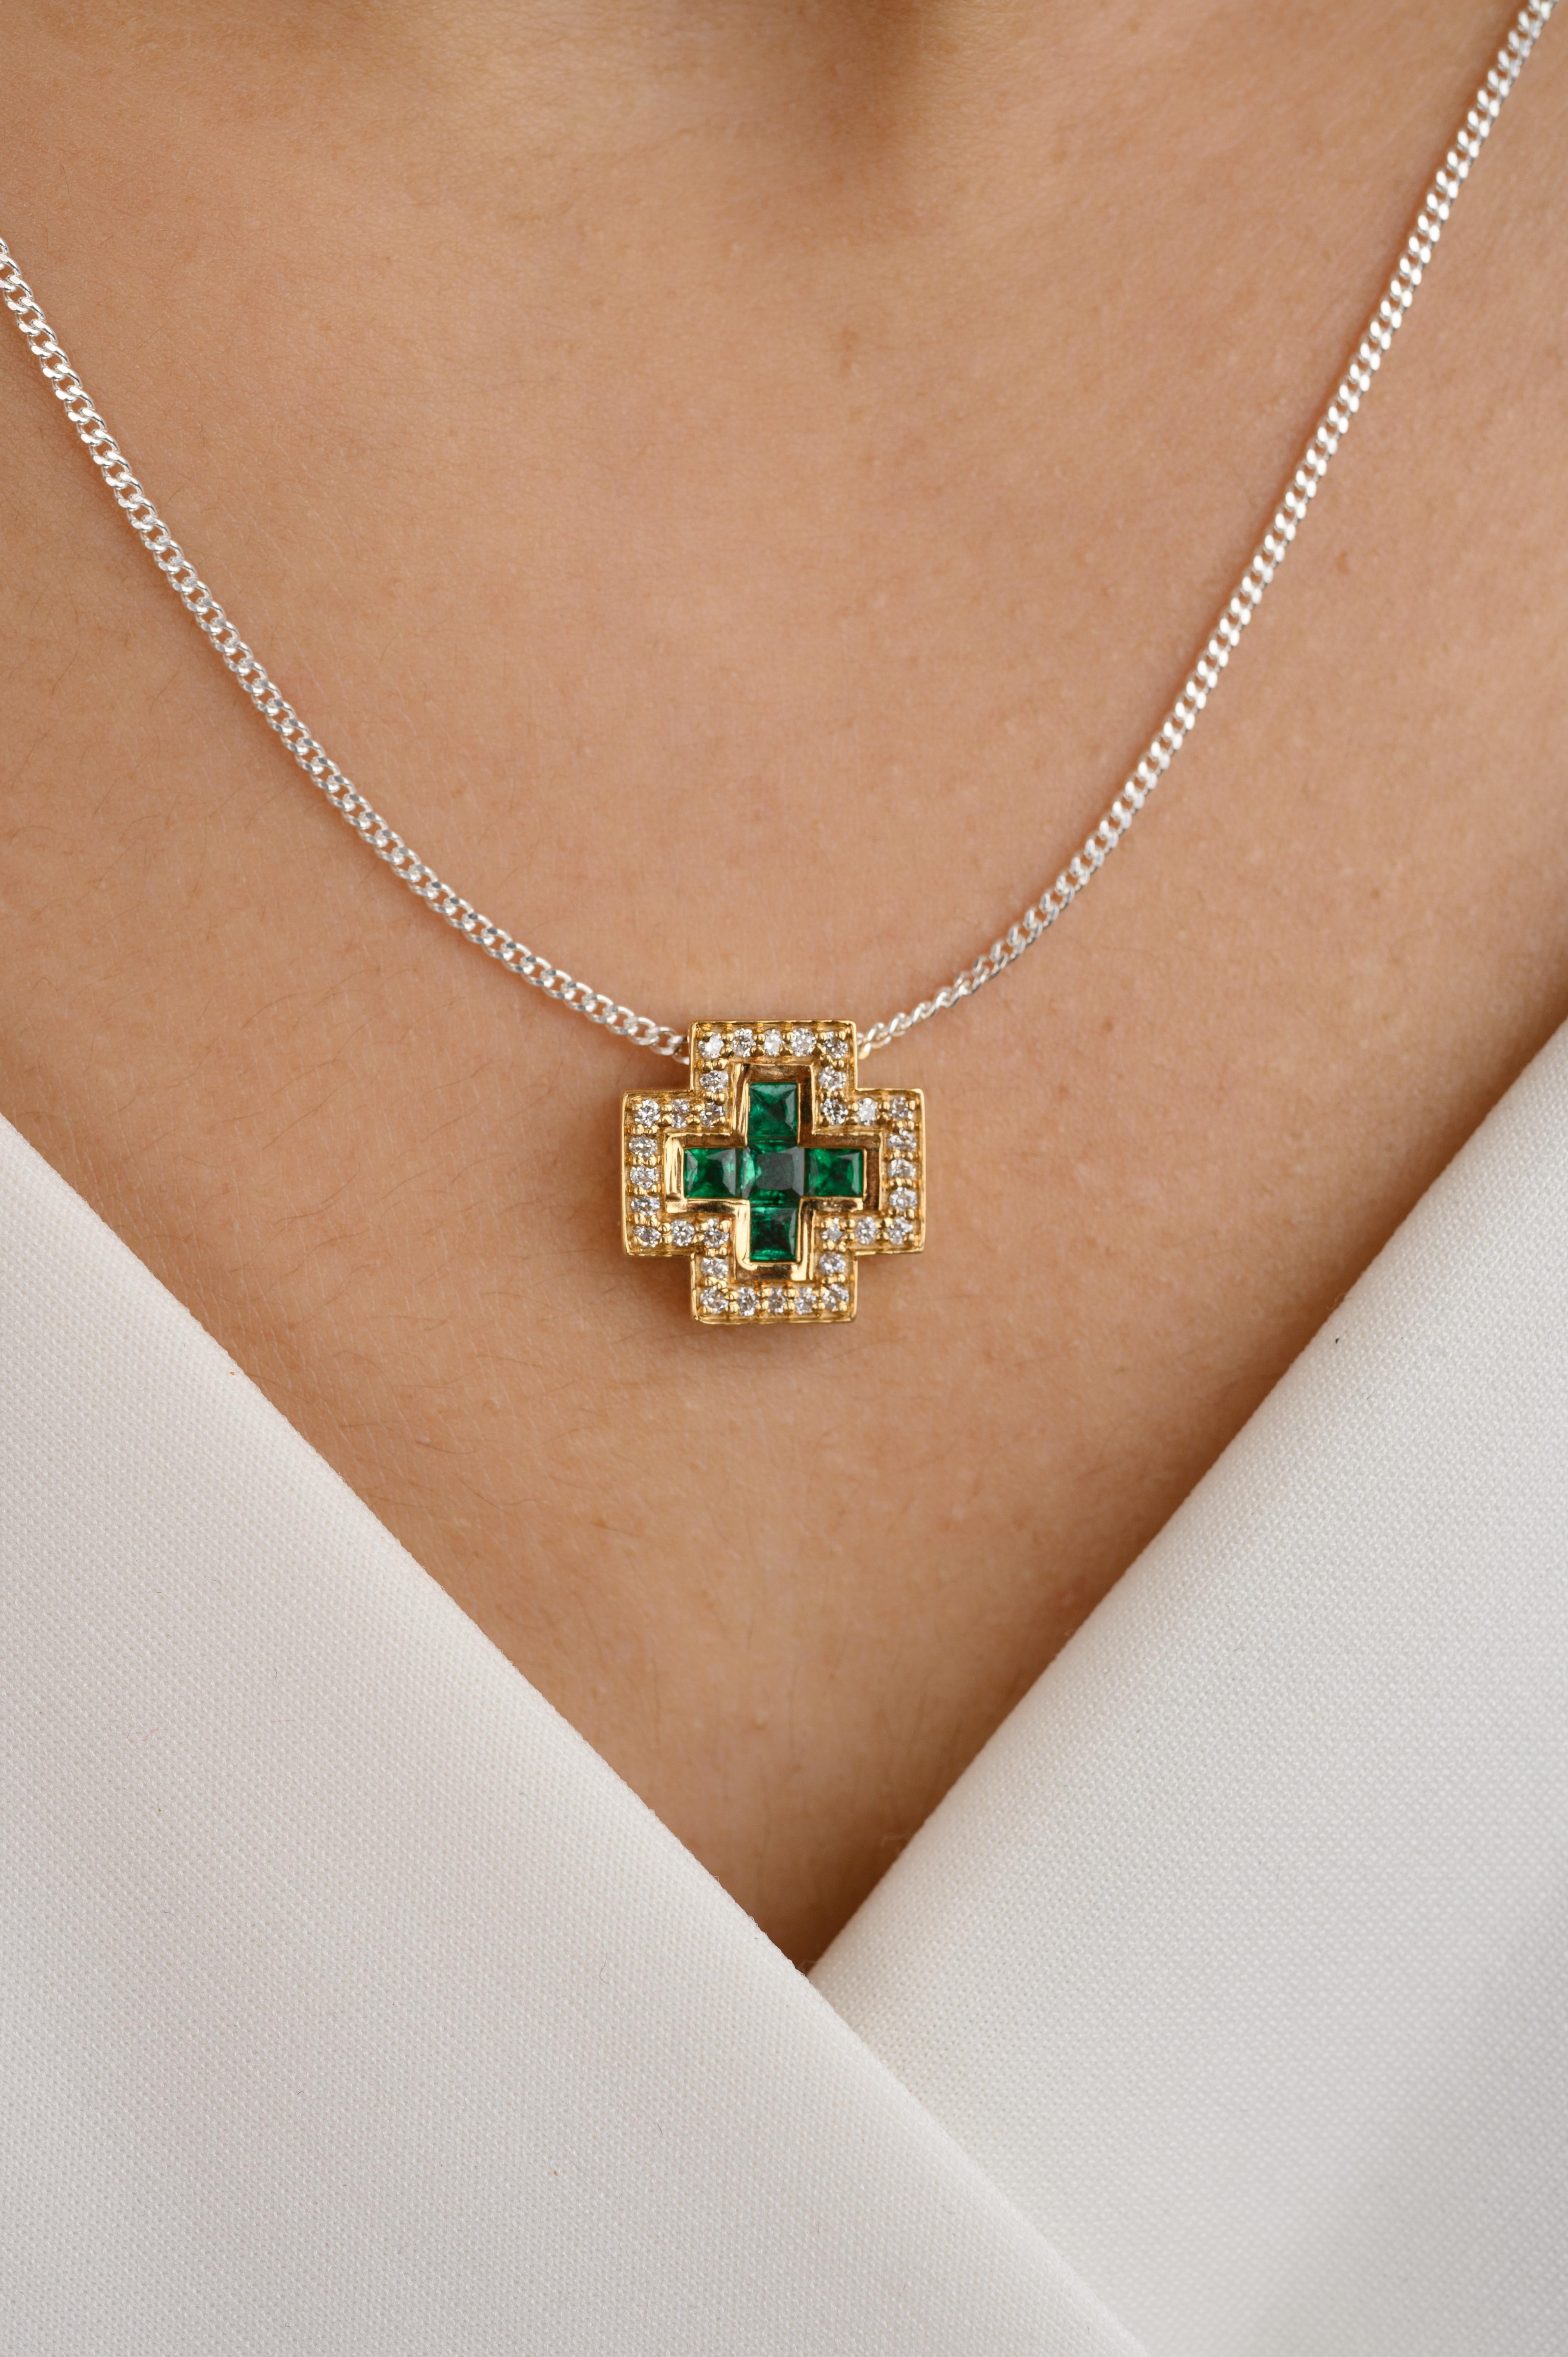 Art Deco Natural Emerald Diamond Bold Cross Anhänger aus 18 Karat Gold, besetzt mit Smaragden im Quadratschliff. Dieses atemberaubende Schmuckstück wertet einen Freizeitlook oder ein elegantes Outfit sofort auf. 
Smaragd steigert die intellektuellen